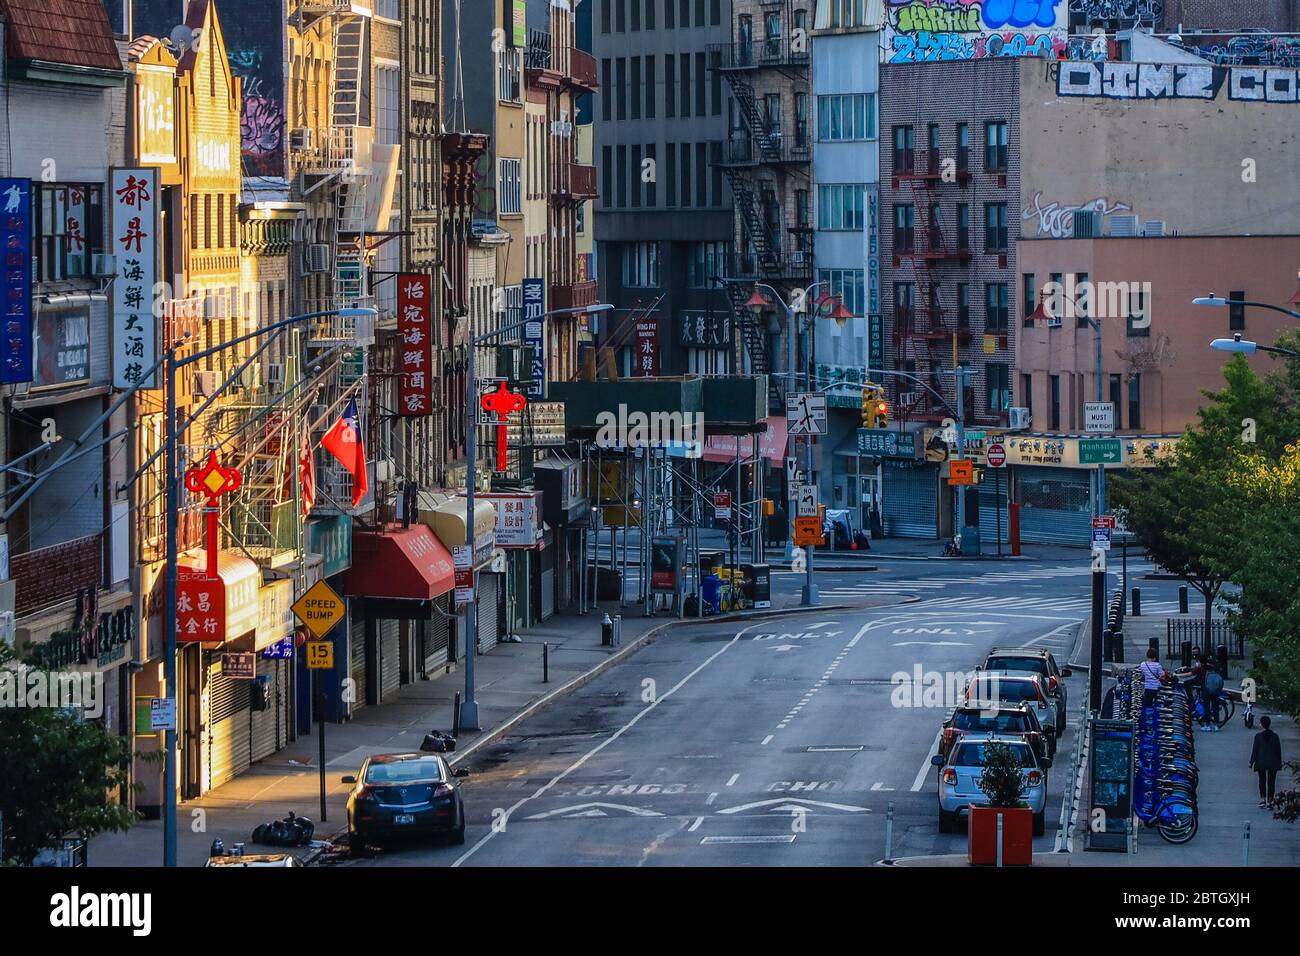 Street Chinatown New York City Stock Photo